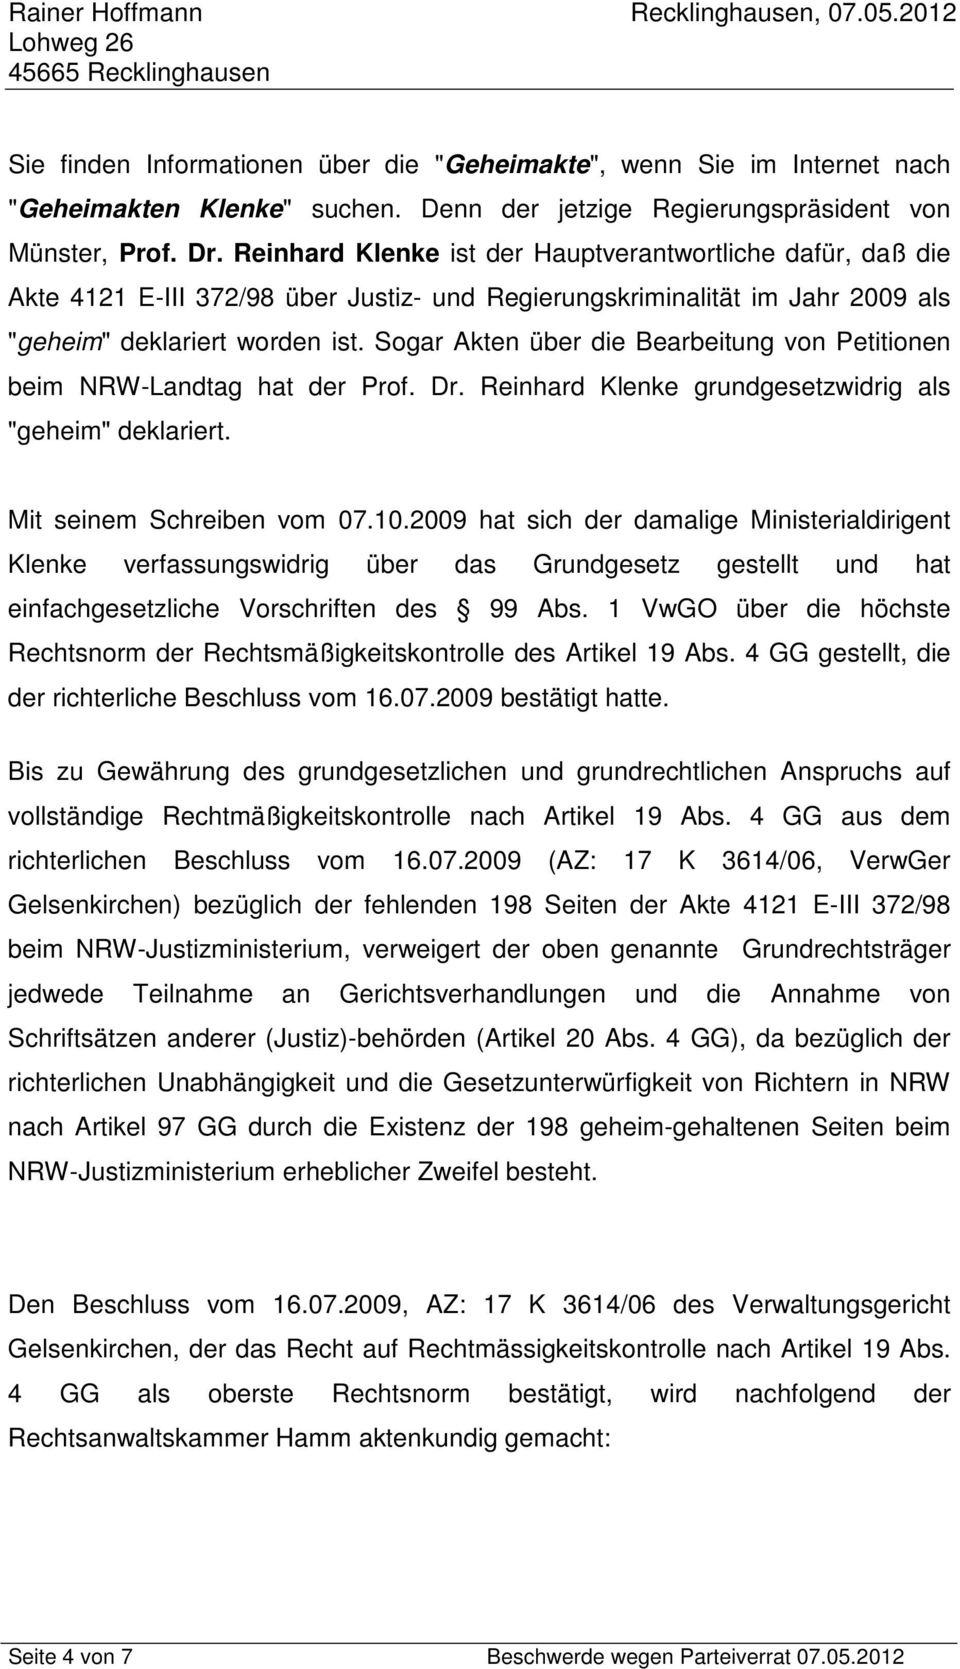 Sogar Akten über die Bearbeitung von Petitionen beim NRW-Landtag hat der Prof. Dr. Reinhard Klenke grundgesetzwidrig als "geheim" deklariert. Mit seinem Schreiben vom 07.10.